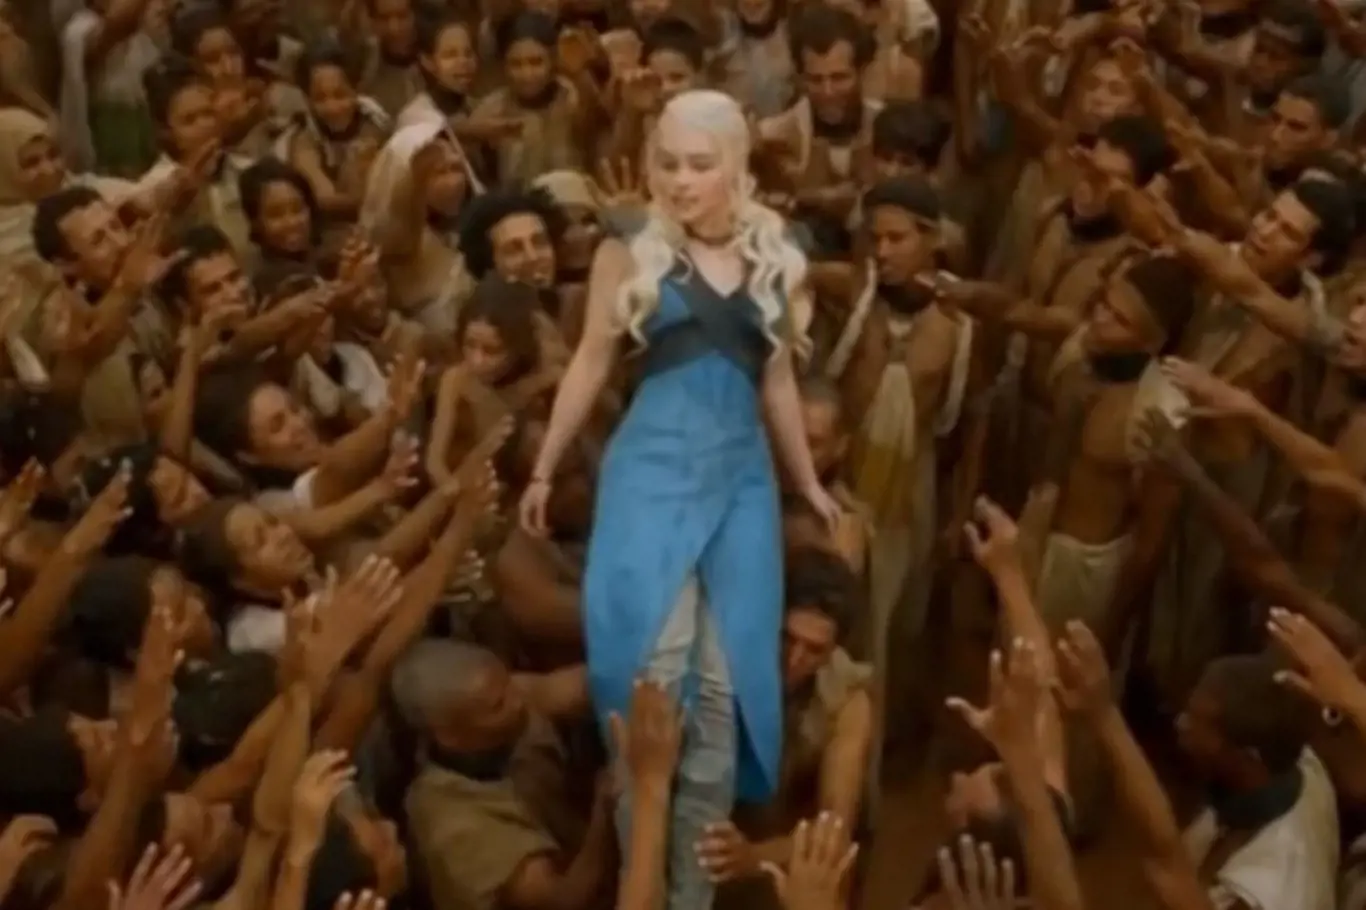 Osvobození otroci děkují Daenerys. Tato scéna naznačuje podle kritiků podvědomou snahu tvůrců ukázat nadřazenost západní společnosti nad jinými kulturami